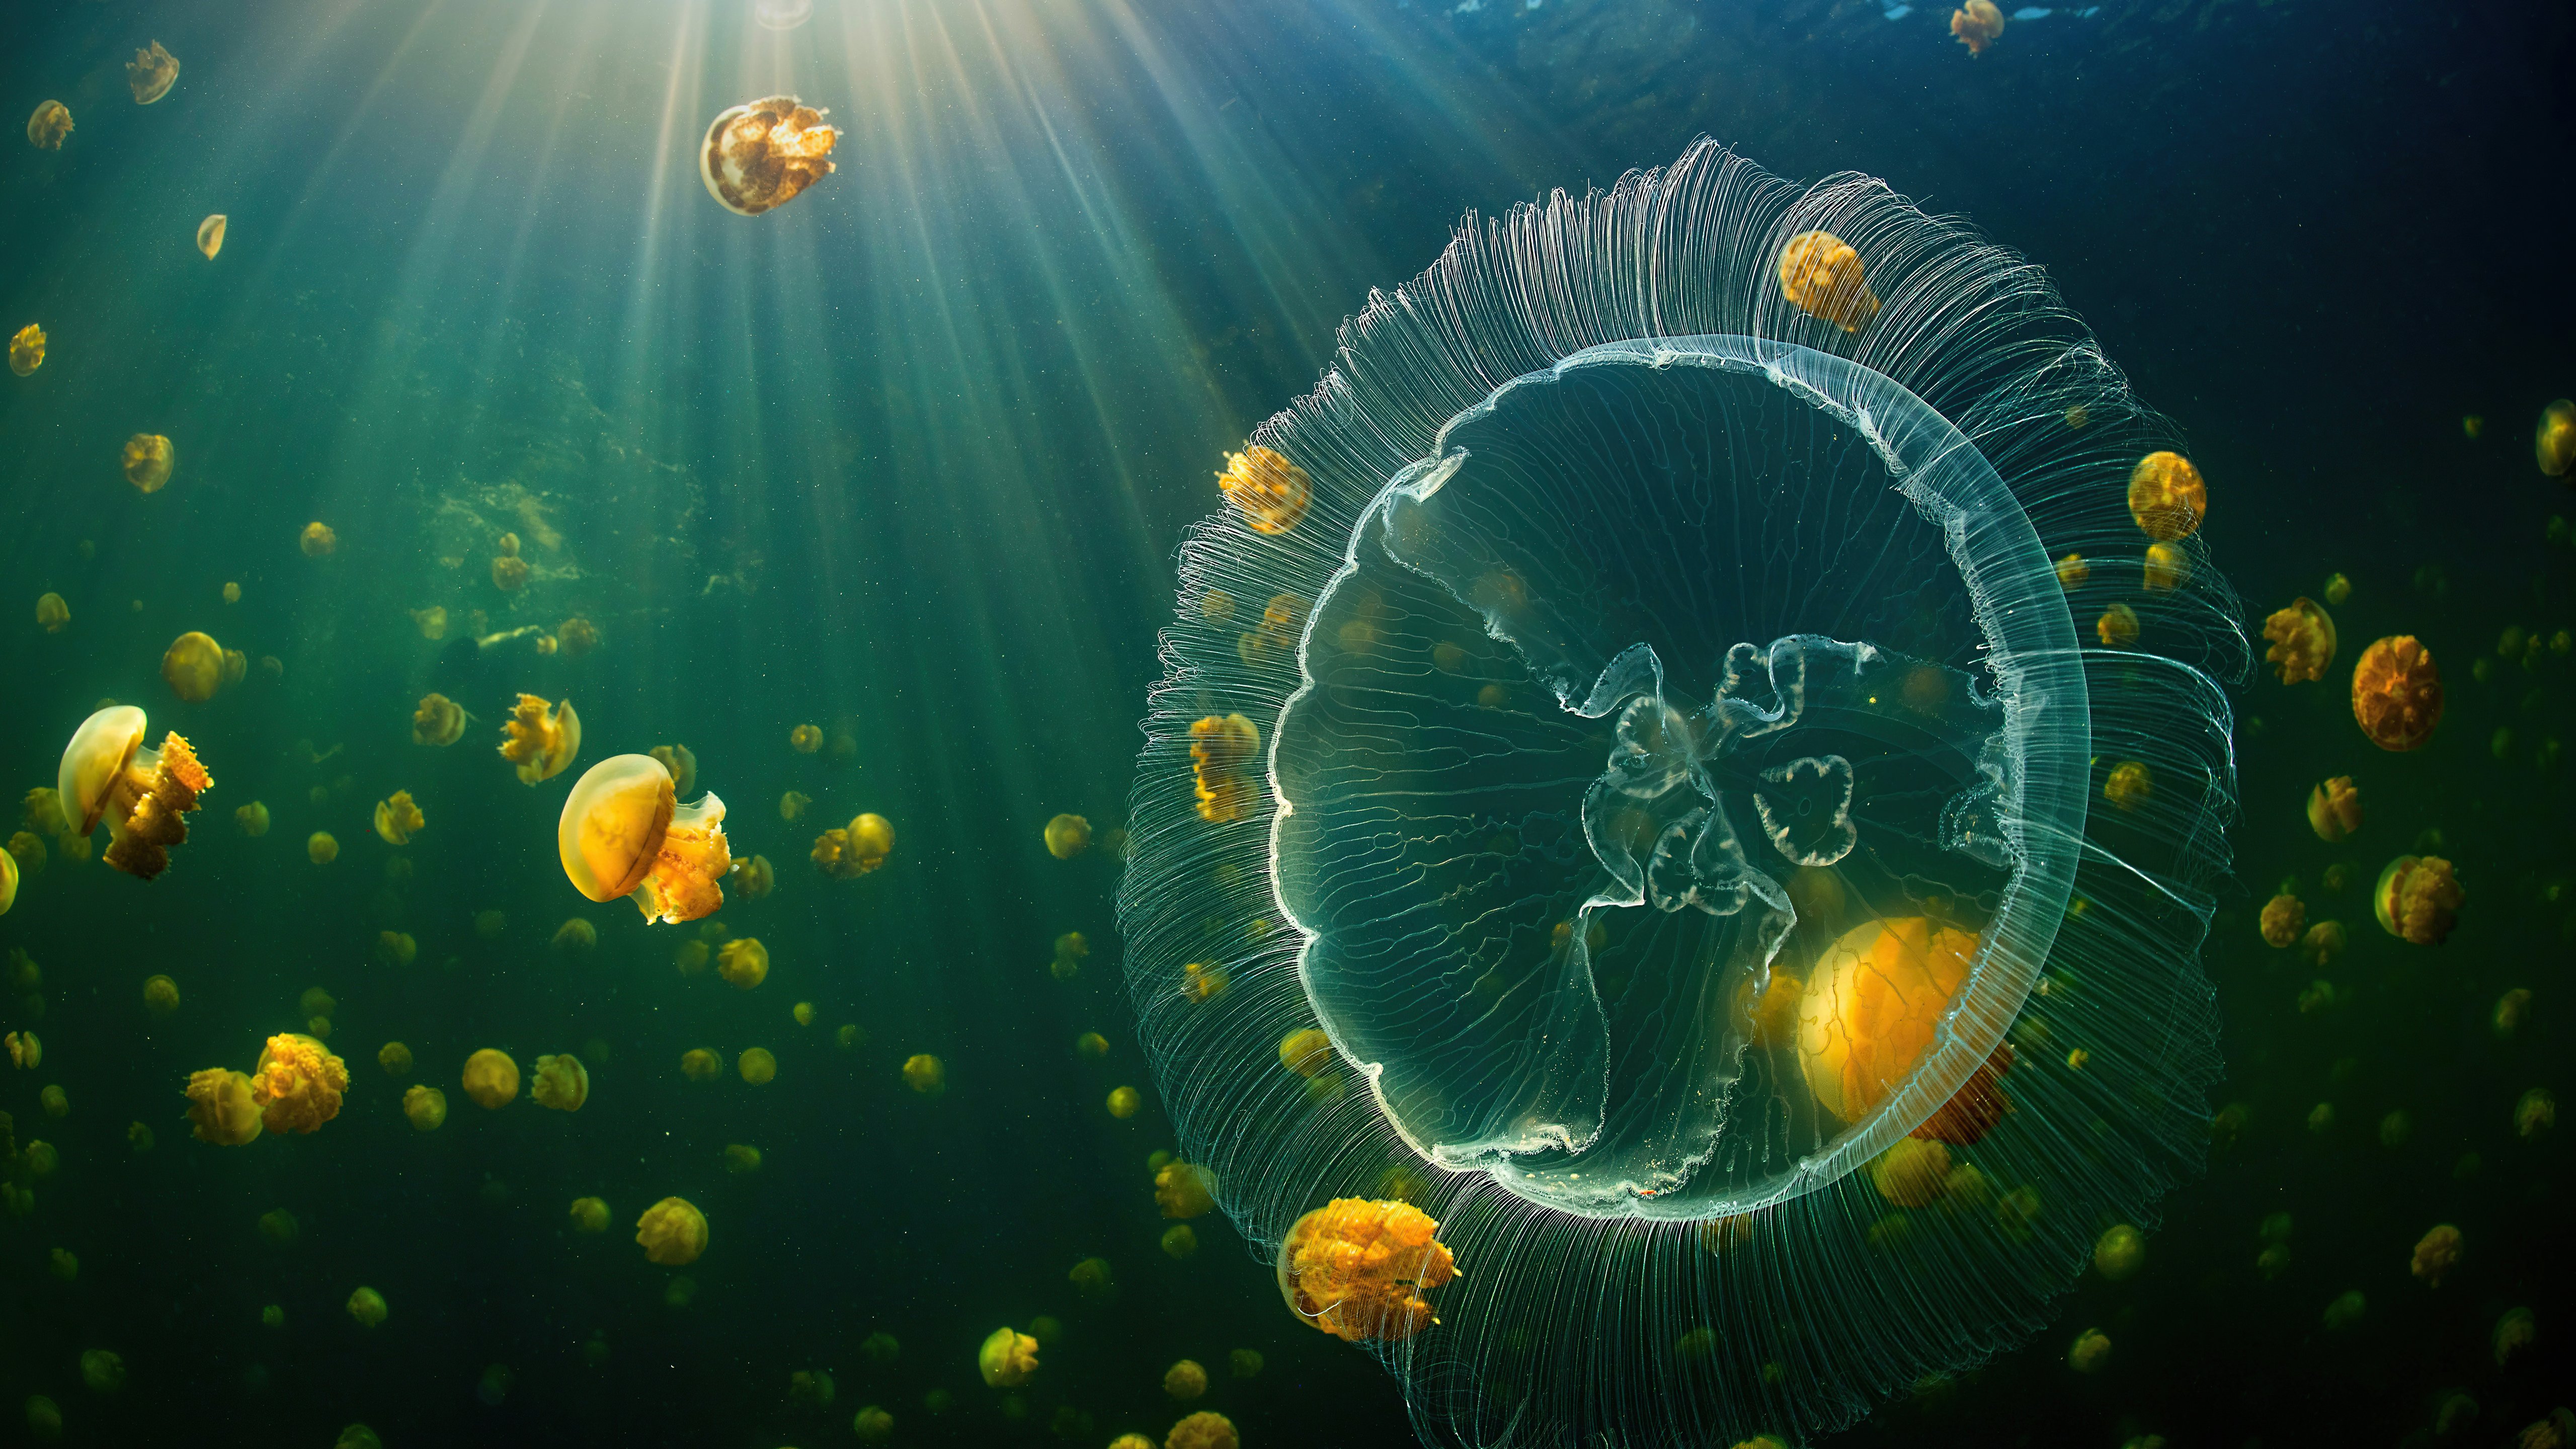 Fondos de pantalla Medusas bajo el mar